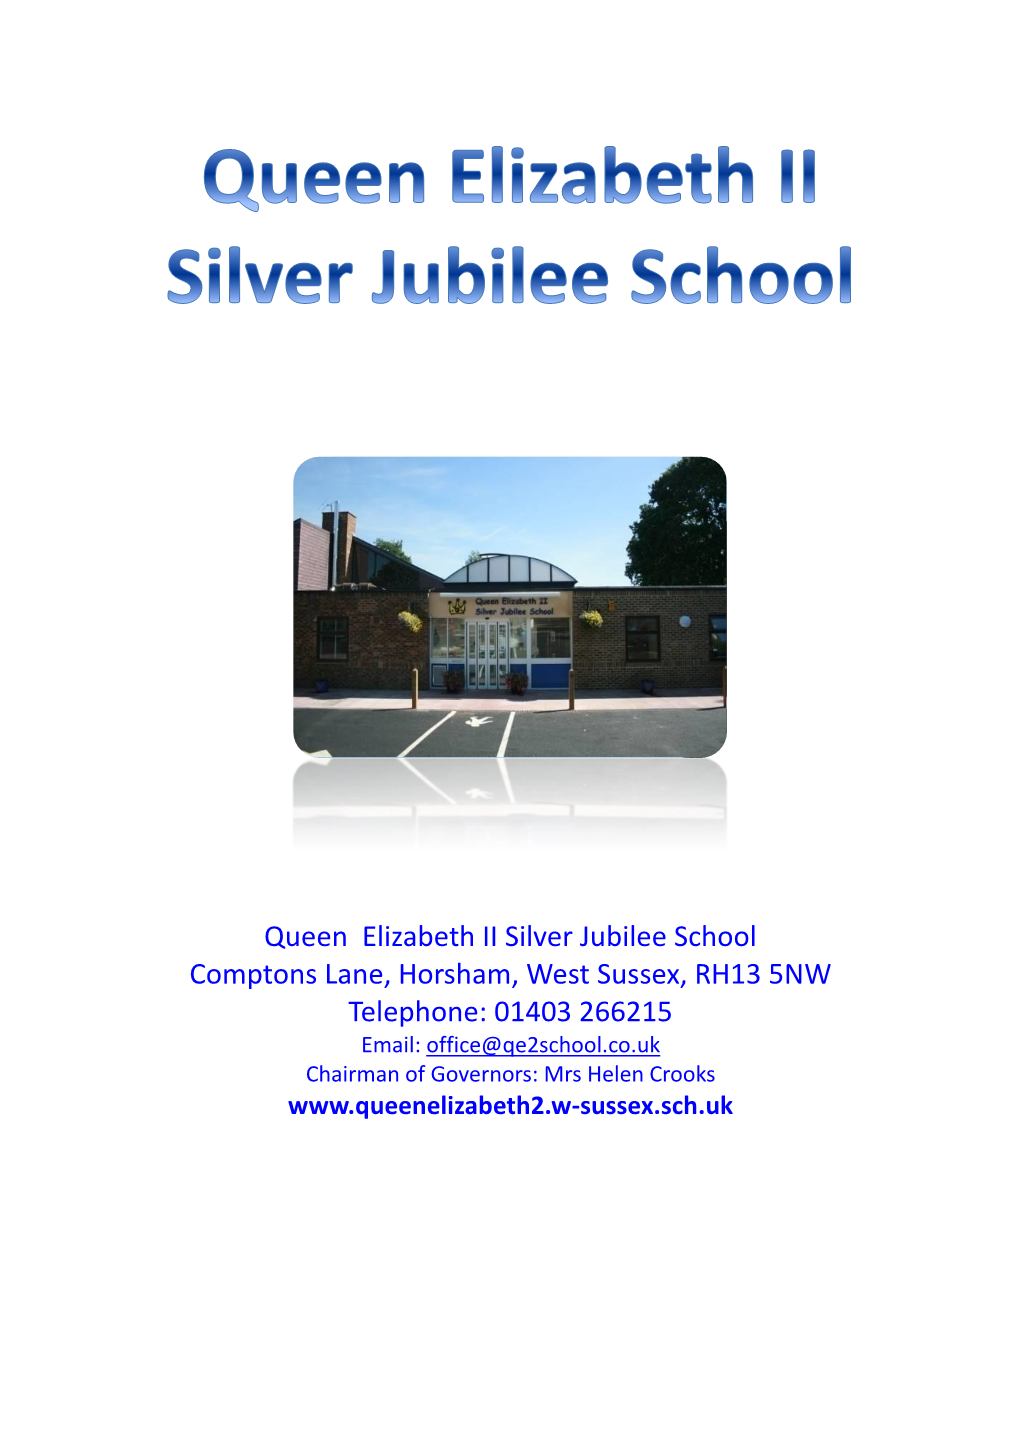 Queen Elizabeth II Silver Jubilee School Comptons